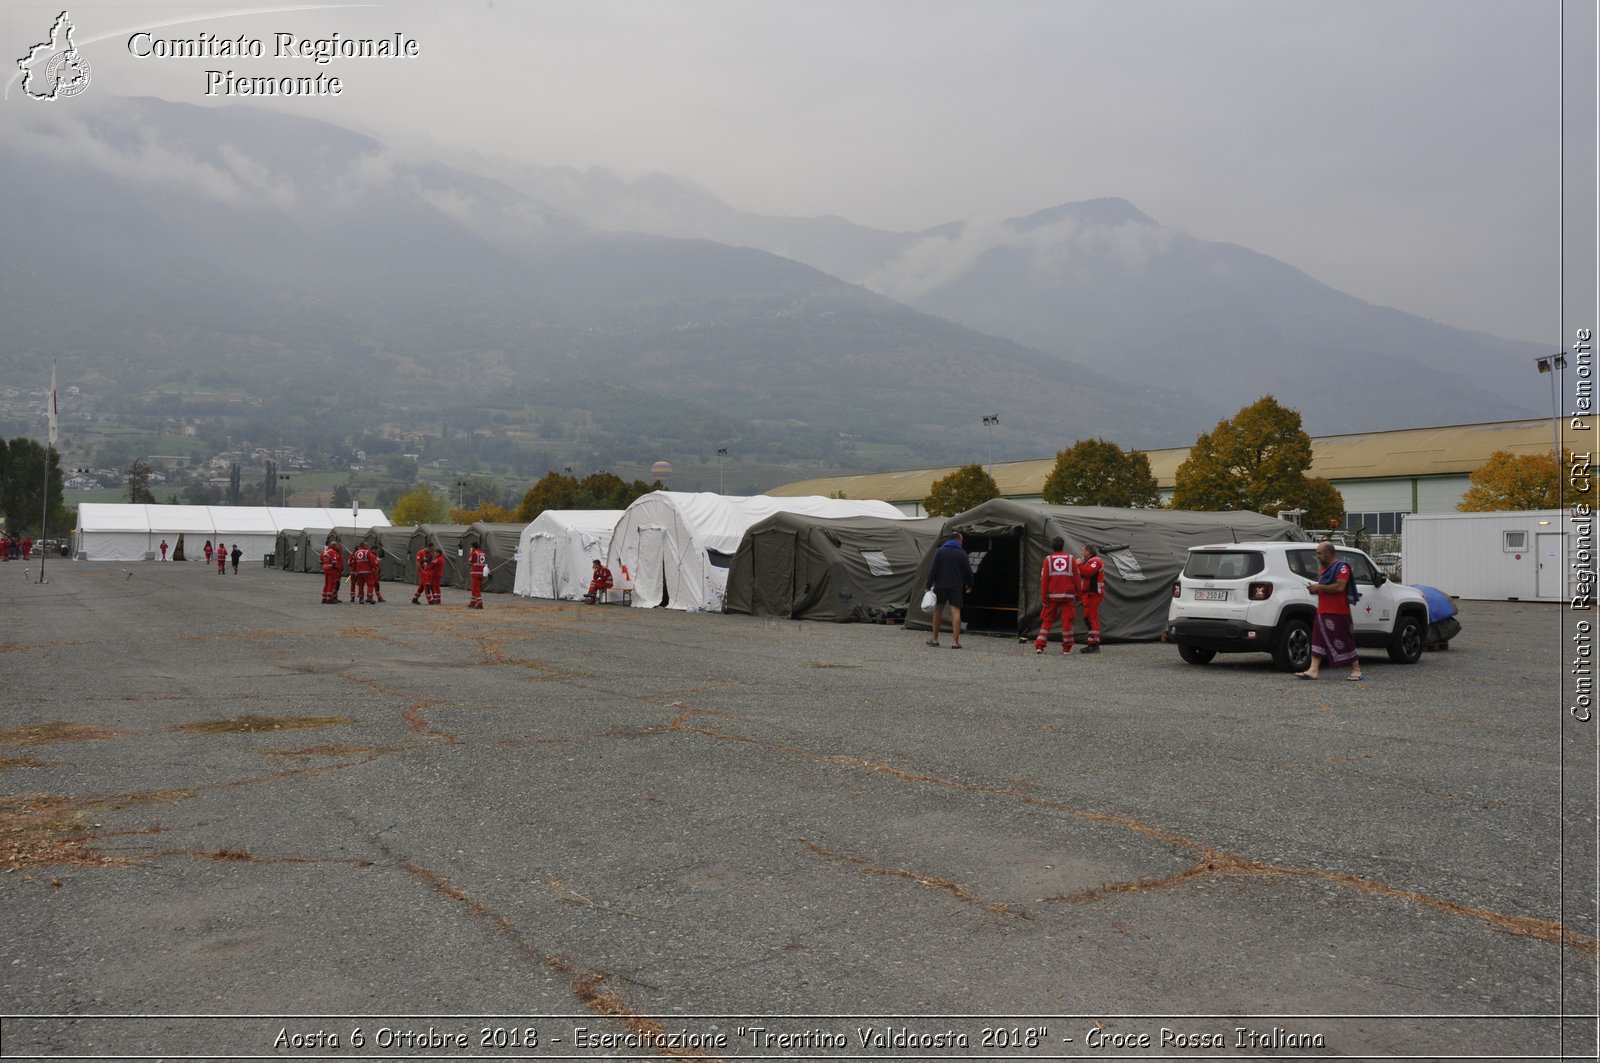 Aosta 6 Ottobre 2018 - Esercitazione "Trentino Valdaosta 2018" - Croce Rossa Italiana- Comitato Regionale del Piemonte